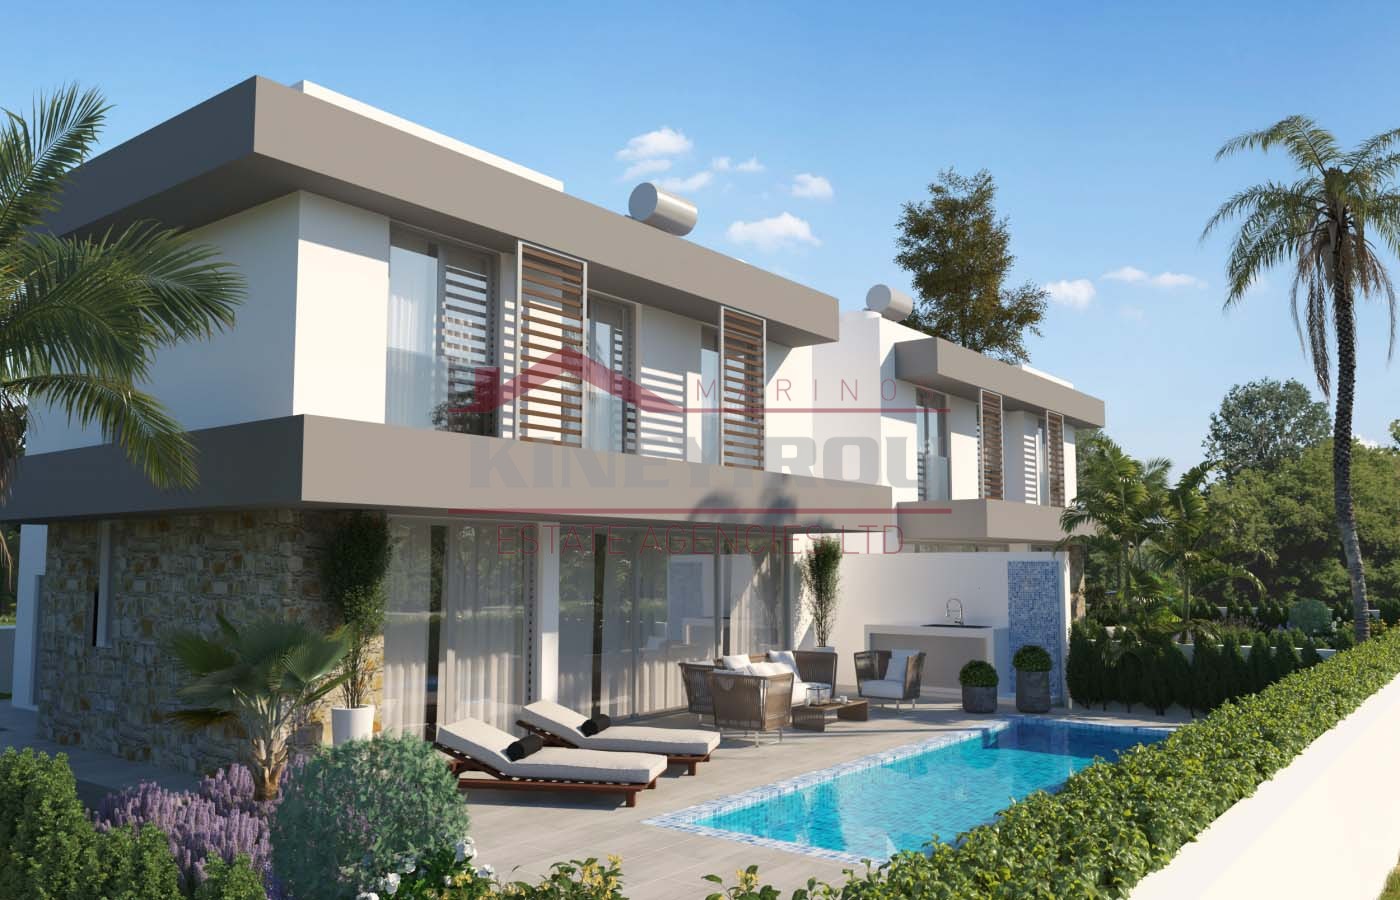  Detached, Modern 3 Bedroom Villa in Pyla area, Larnaca.